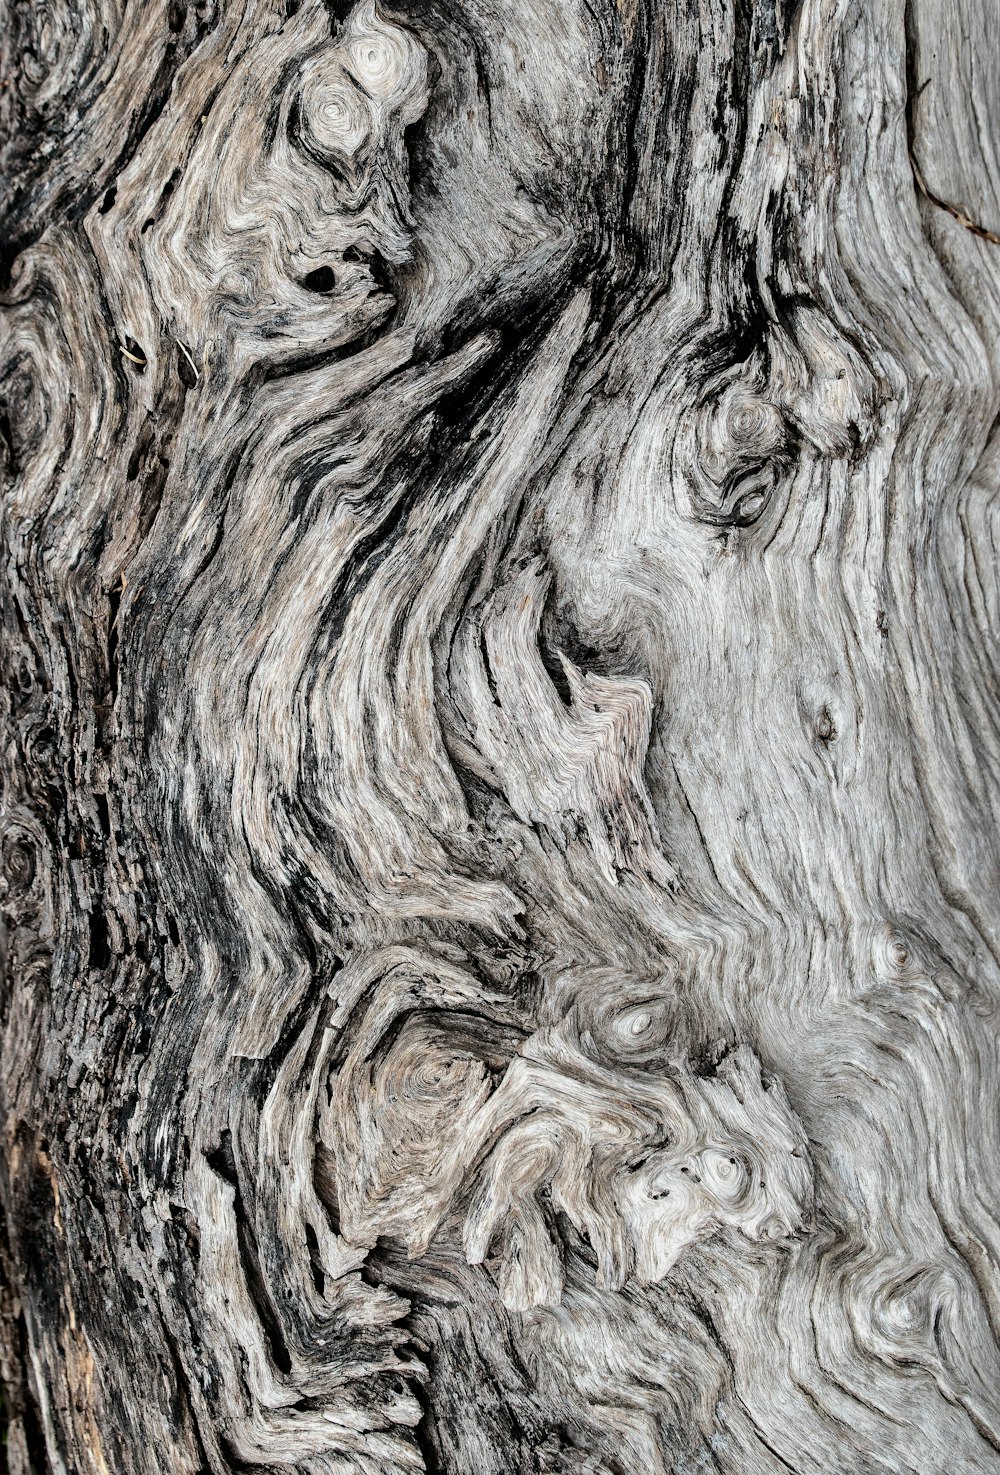 Imágenes de troncos de árboles  Descargar imágenes gratis en Unsplash